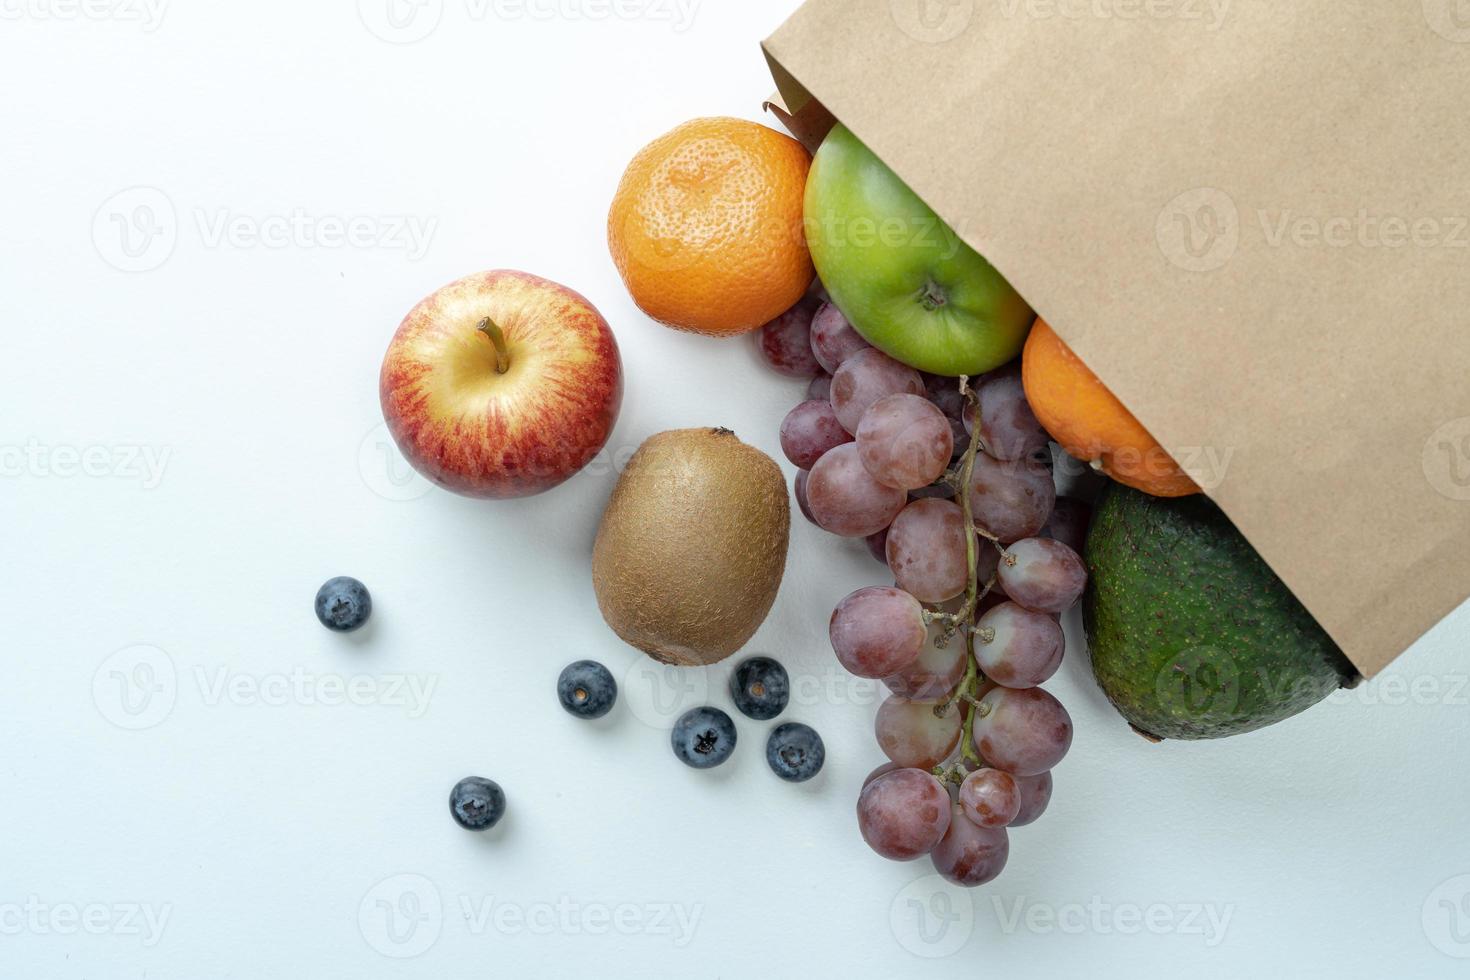 muitas frutas em um saco de papel têm muitos benefícios. foto